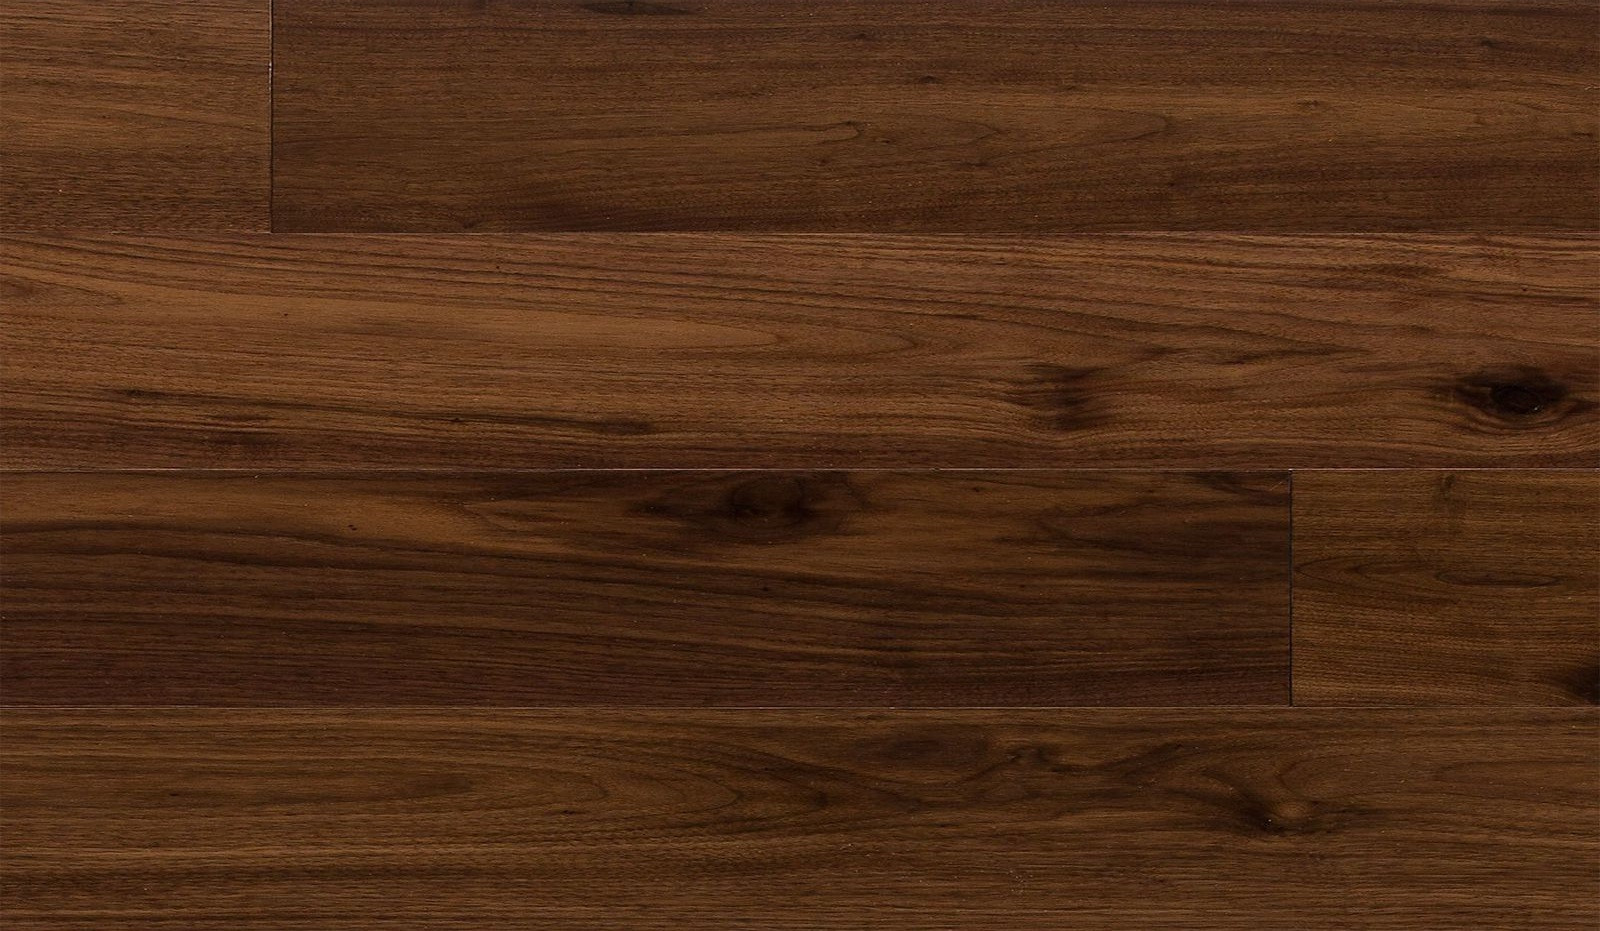 21 Lovable Hardwood Floor Refinishing Las Vegas 2024 free download hardwood floor refinishing las vegas of wood floors kensington wood floors inside kensington wood floors photos